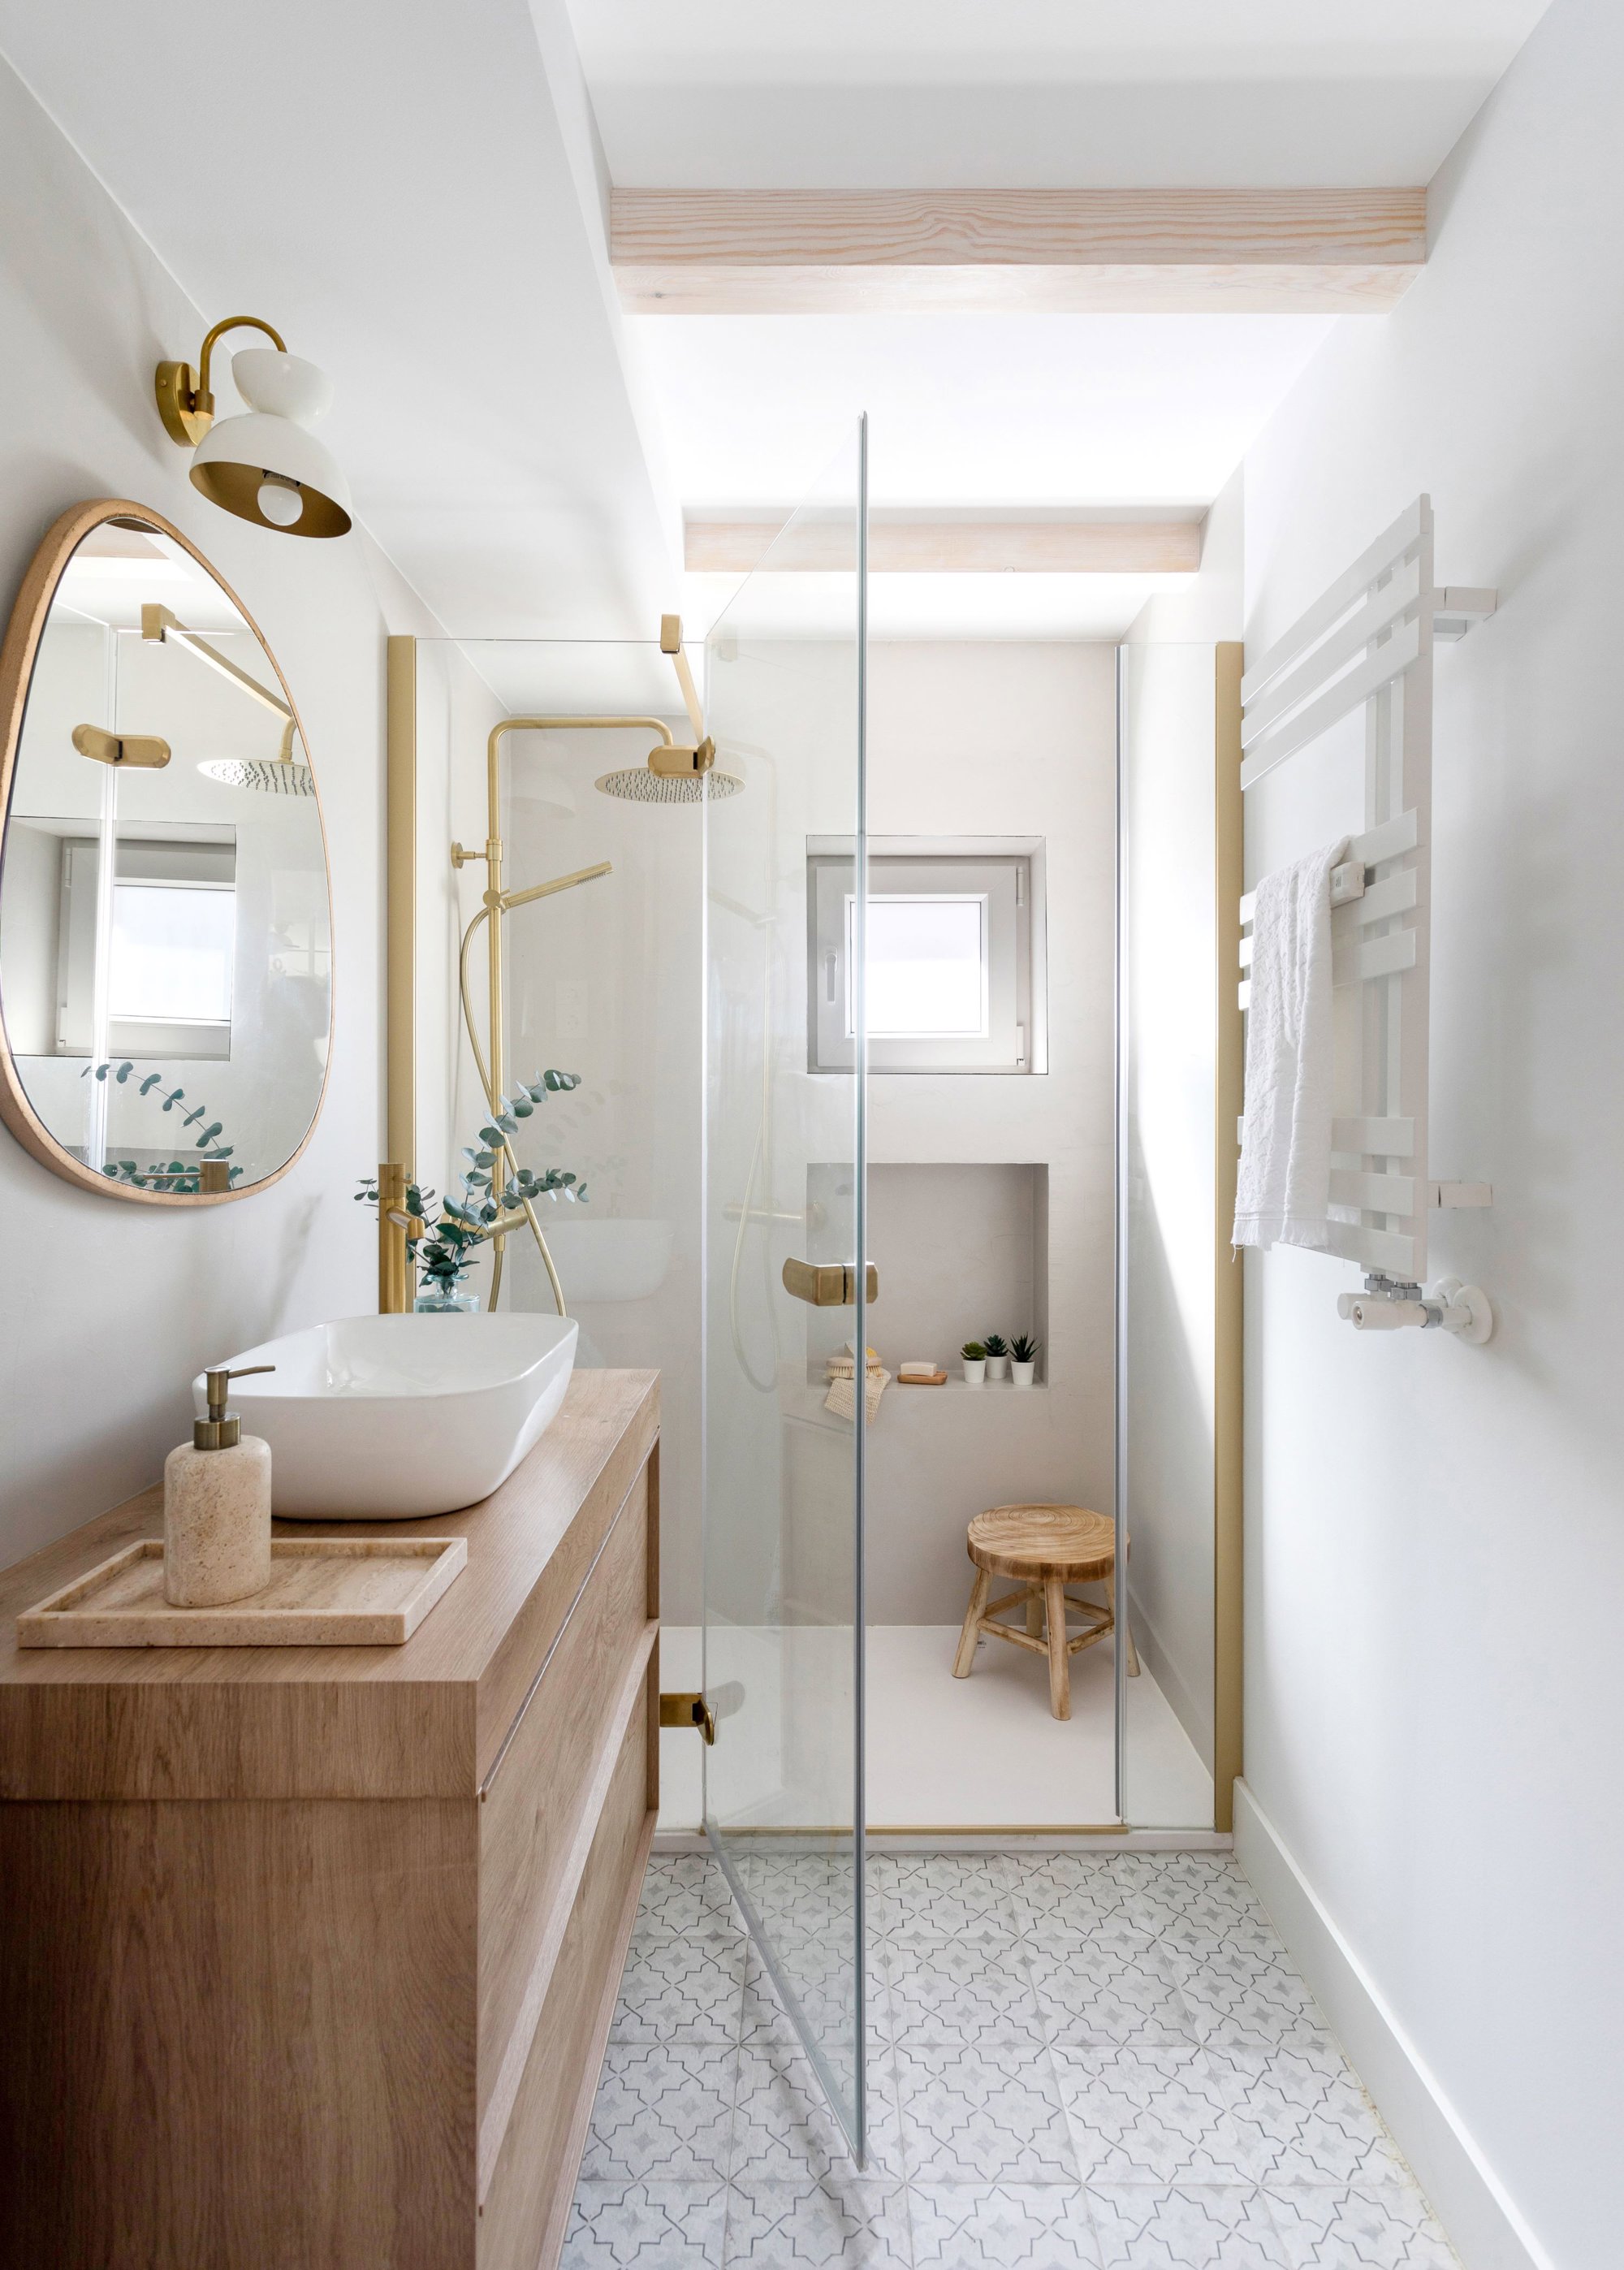 Un baño en tonos claros con detalles en oro y madera.